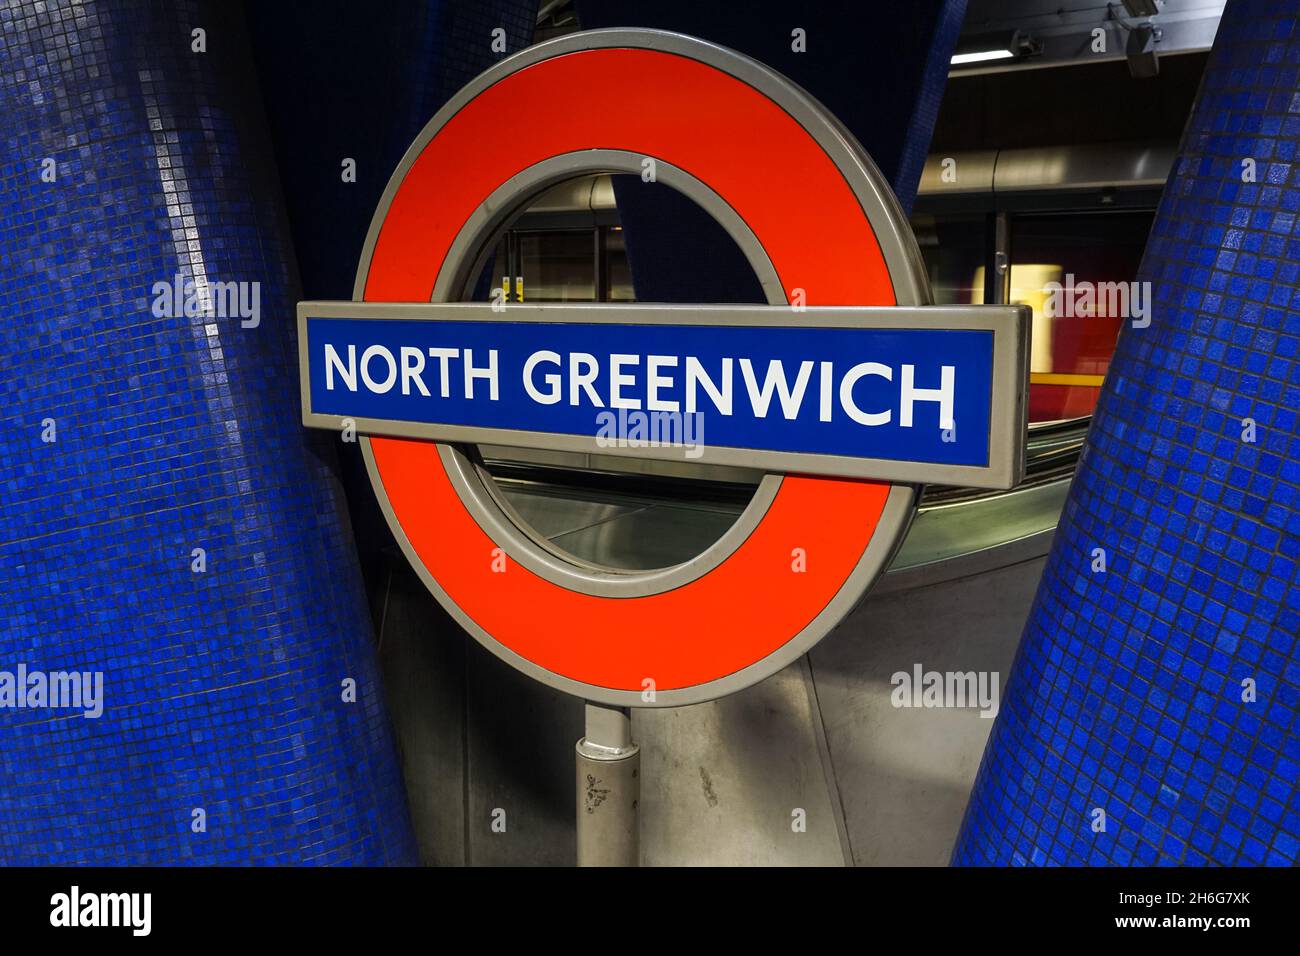 North Greenwich souterrain, station de métro rond panneau Londres Angleterre Royaume-Uni Banque D'Images